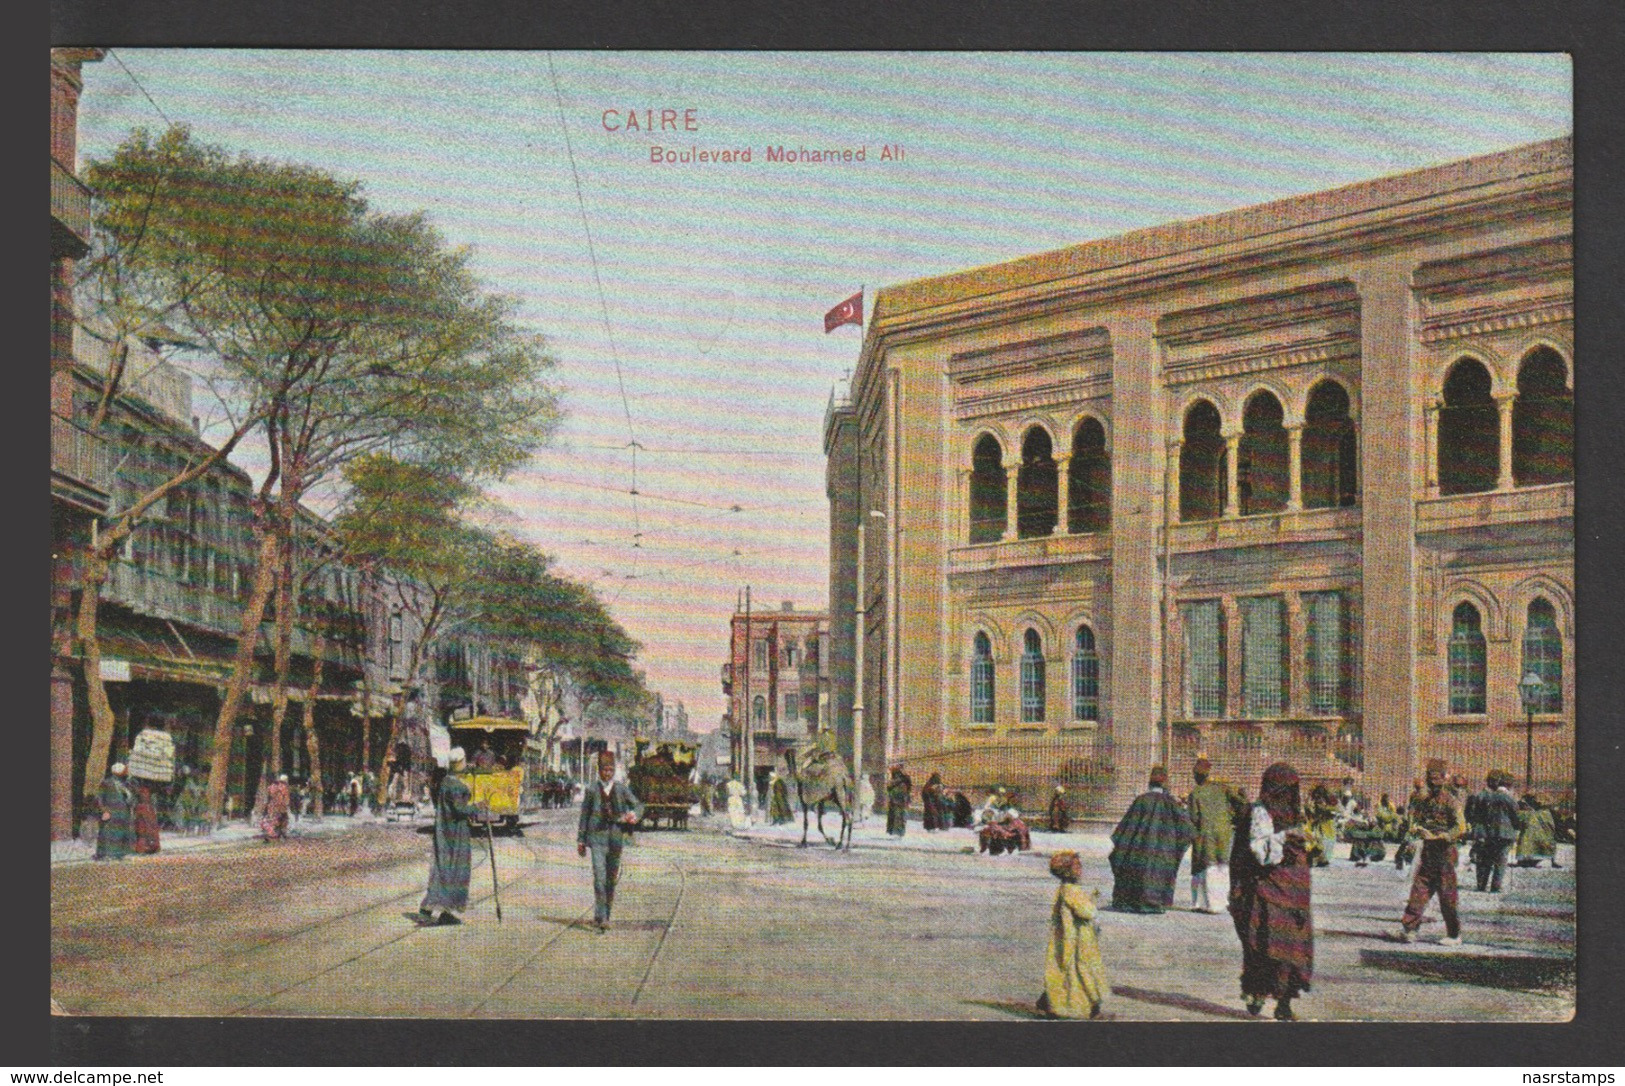 Egypt - Very Rare - Vintage Post Card - Mohamed Ali Boulevard - Cairo - 1866-1914 Ägypten Khediva